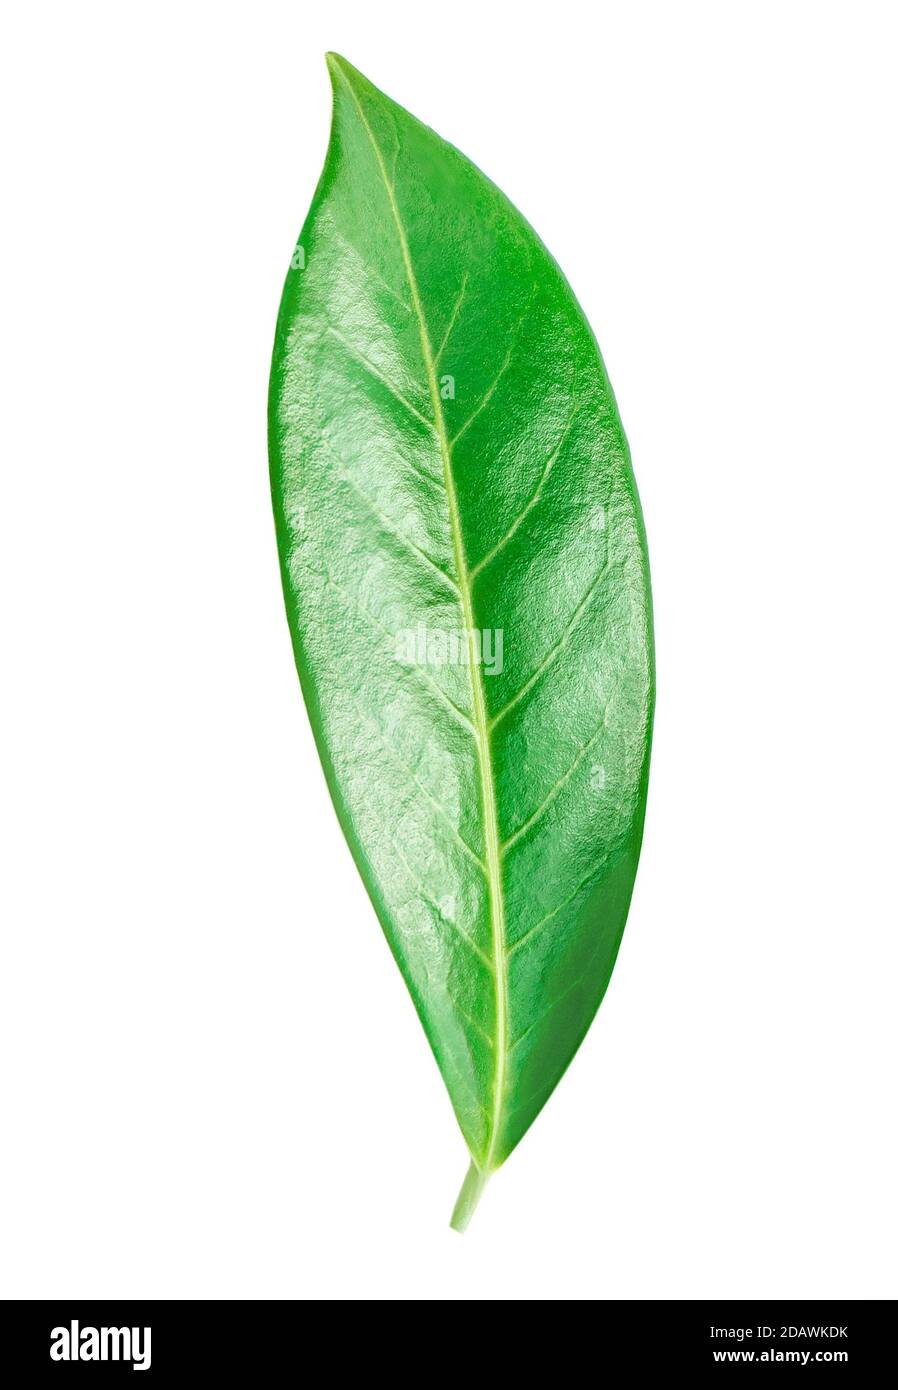 Citrus leaf isolated on a white background. Orange fruit leaf macro. Stock Photo